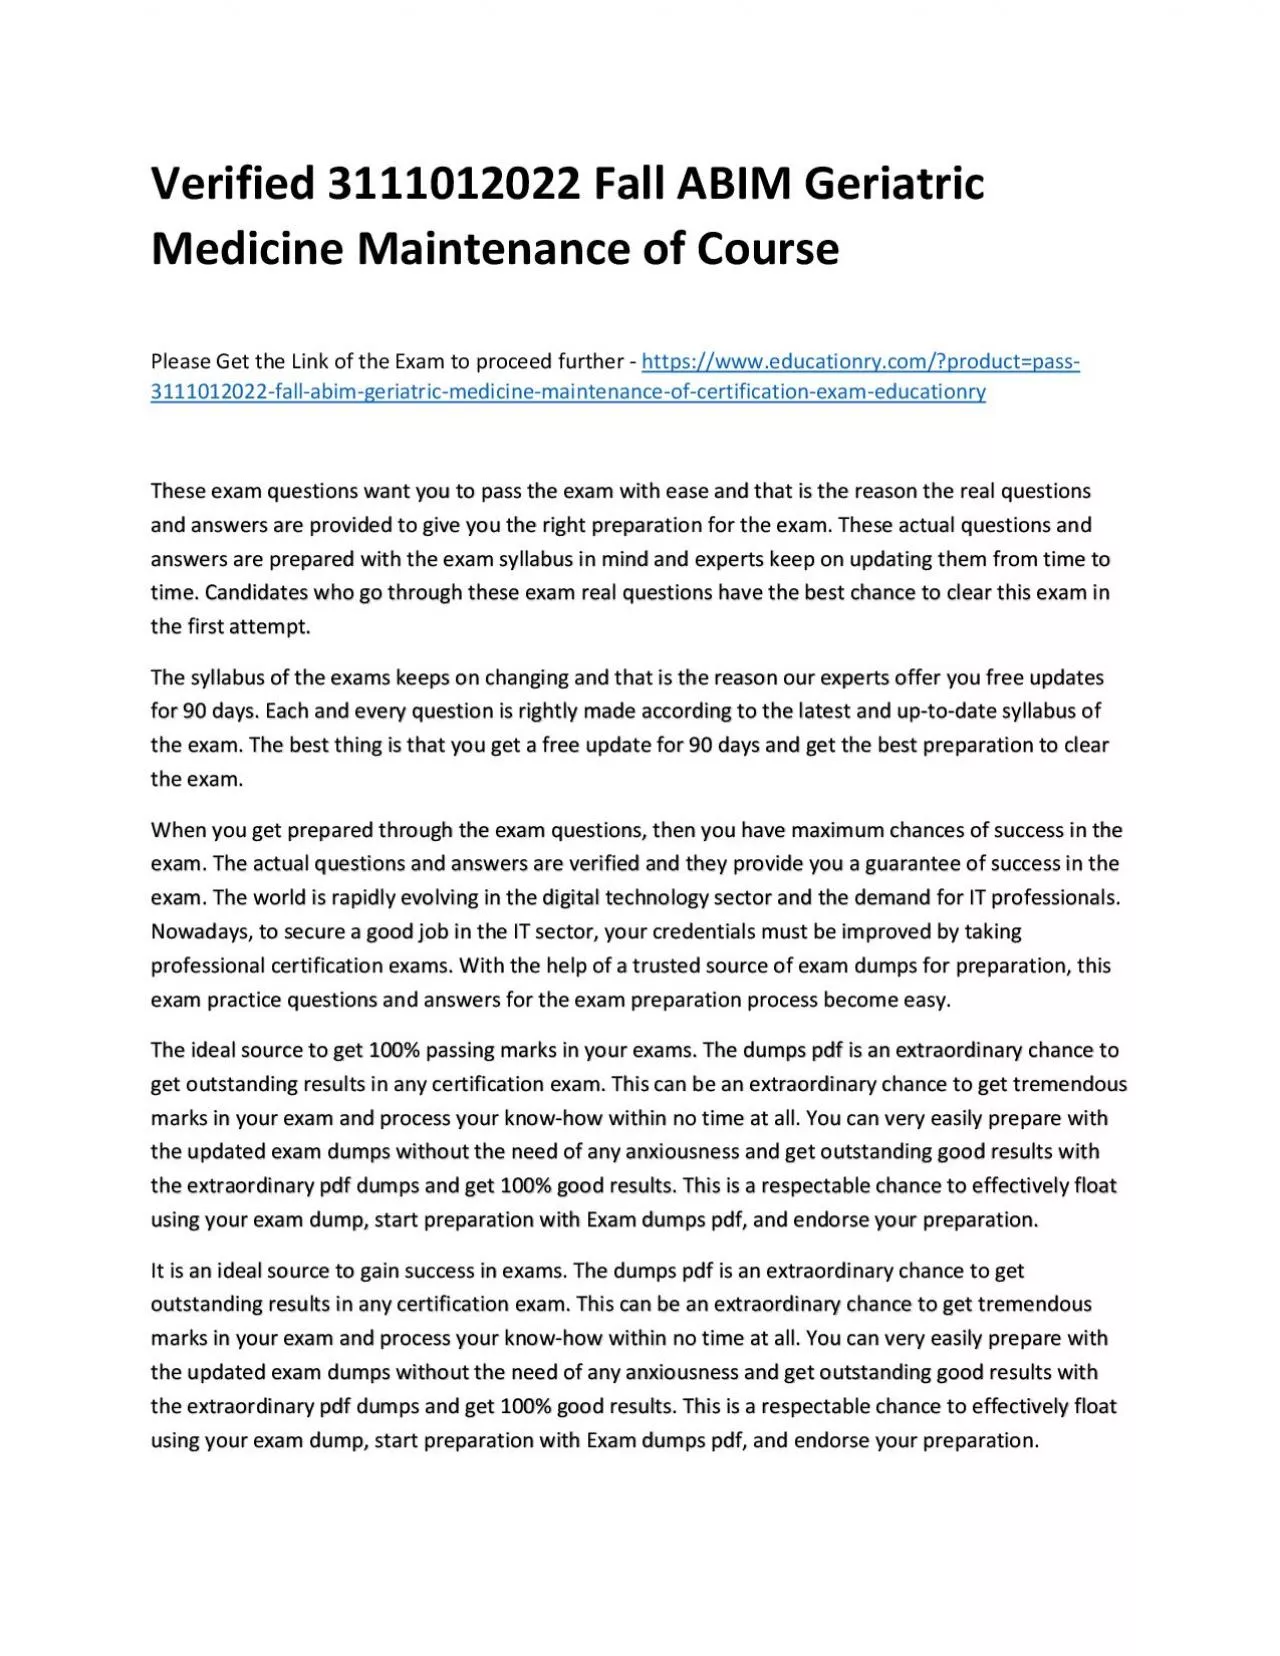 Verified 3111012022 Fall ABIM Geriatric Medicine Maintenance of Practice Course